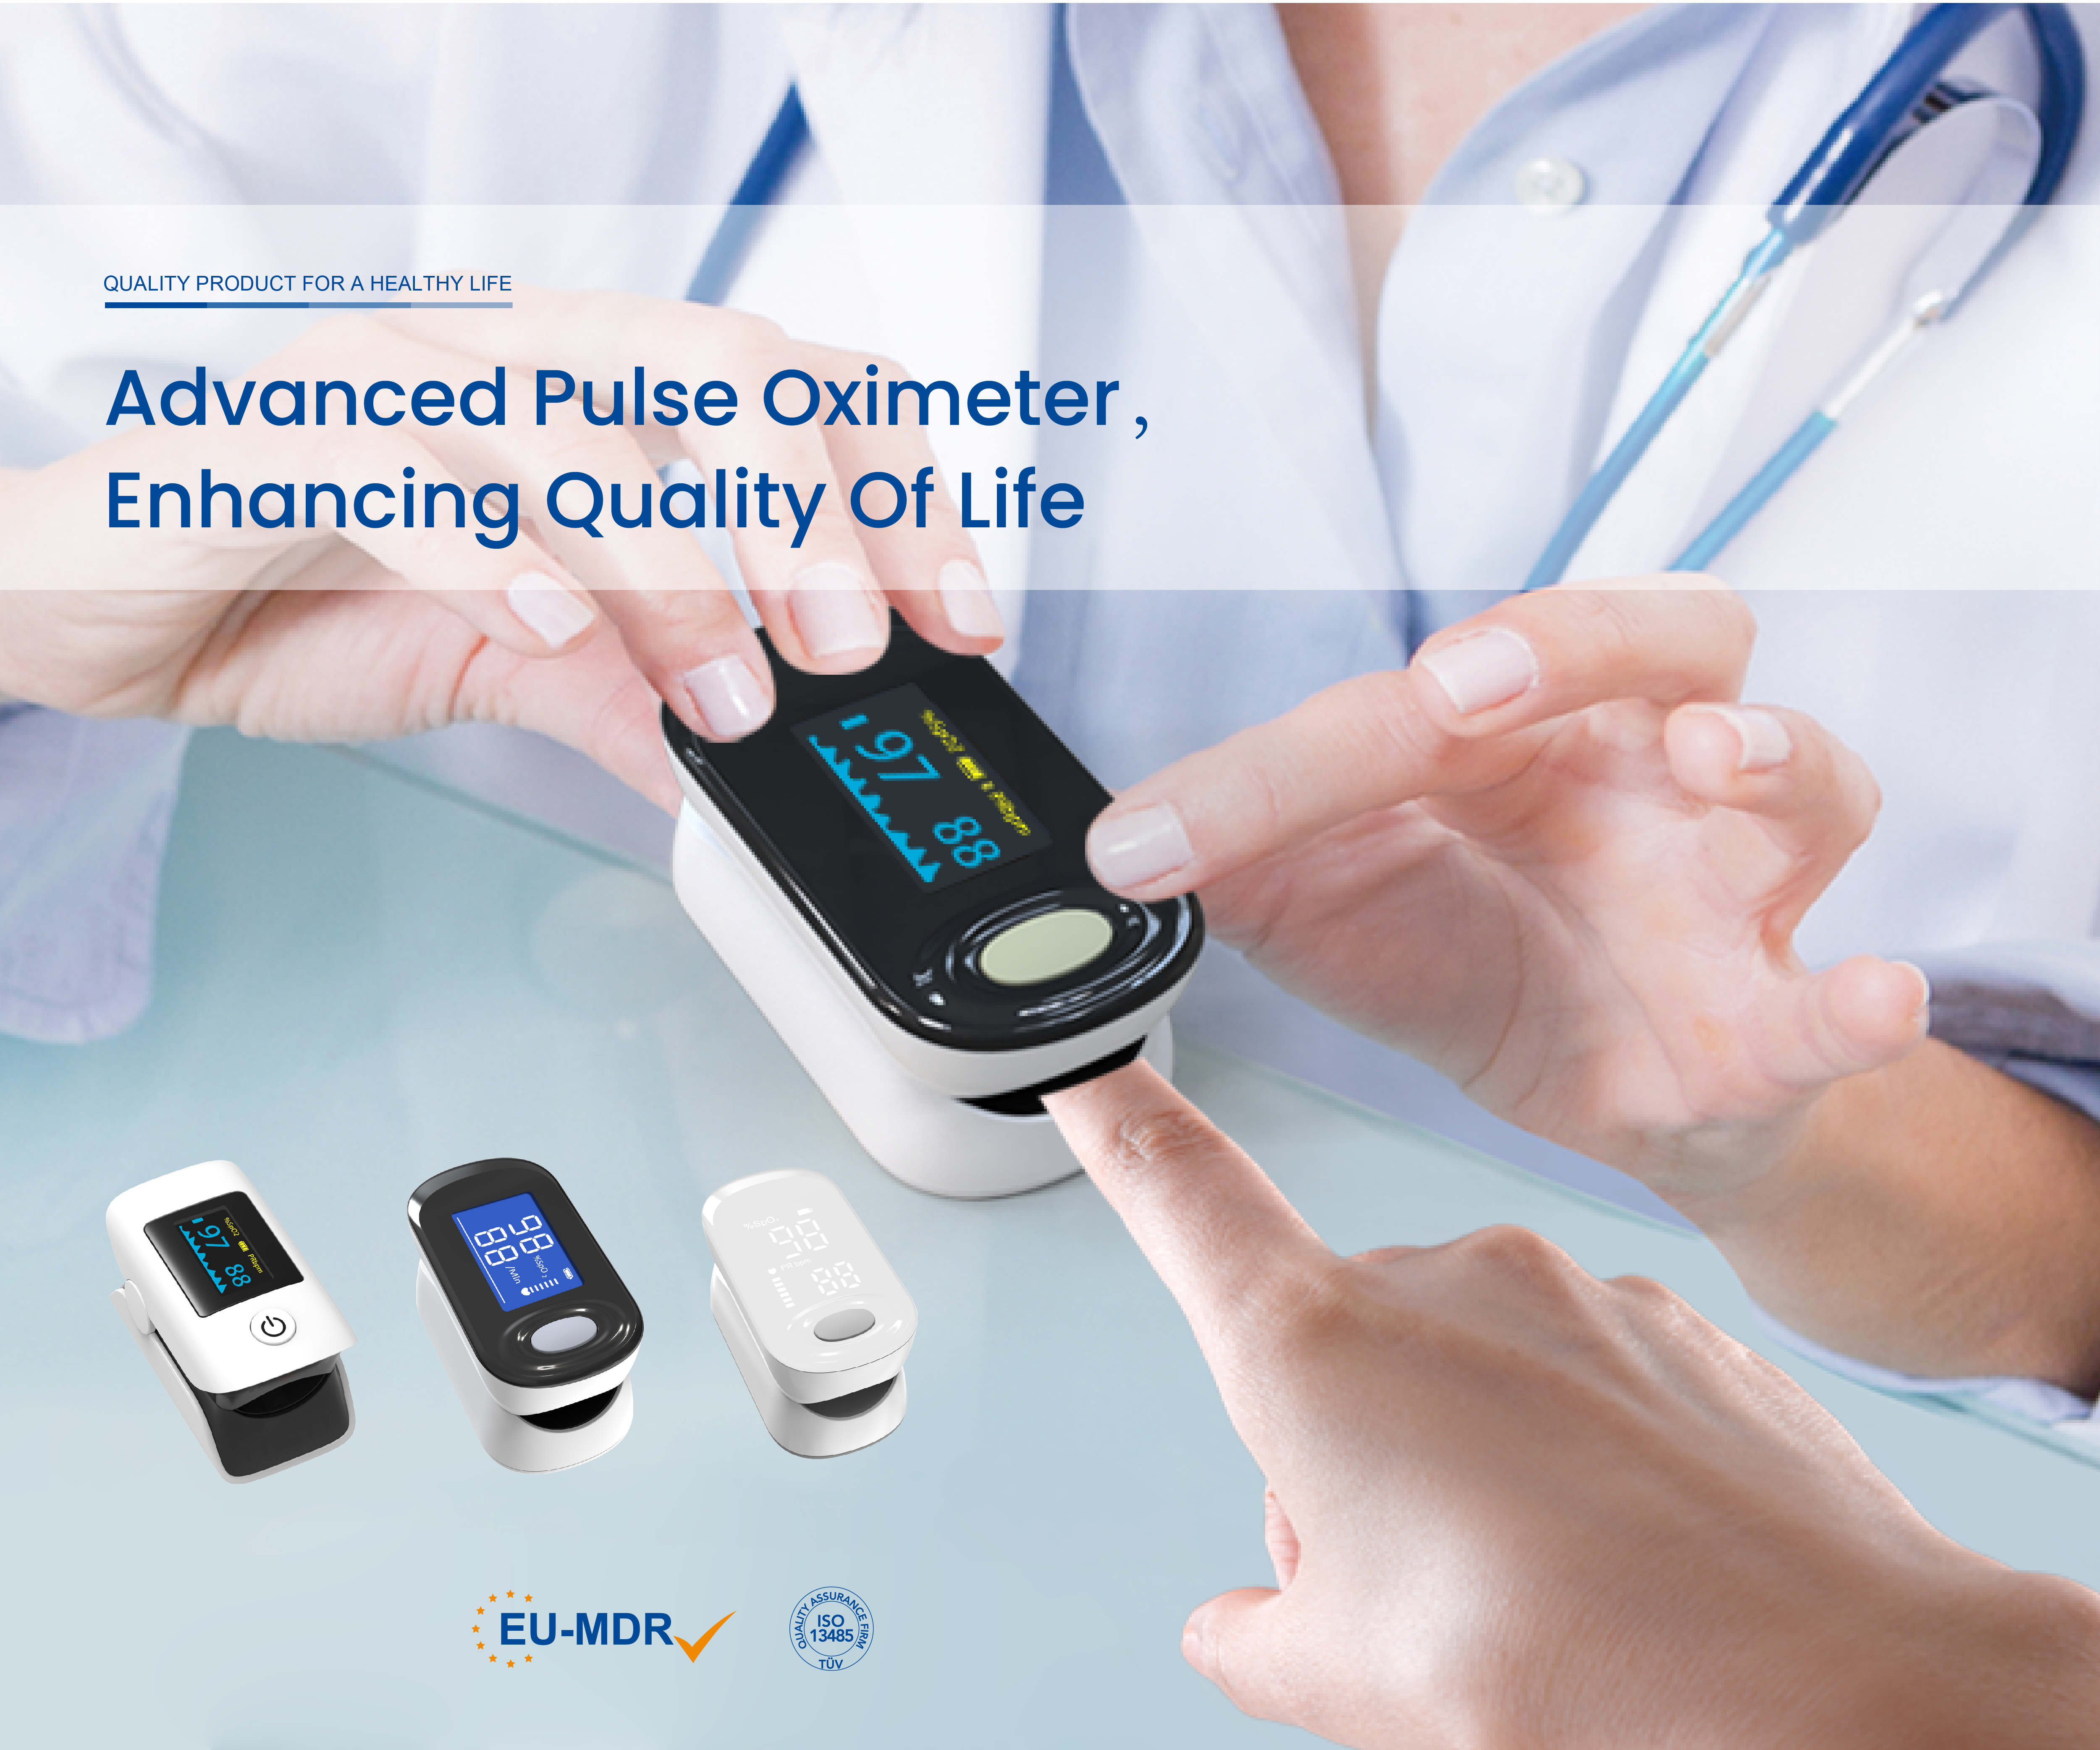 Baie geluk aan Joytech Healthcare met die bereiking van CE MDR-sertifisering vir vingerpunt-pulsoksimeters!